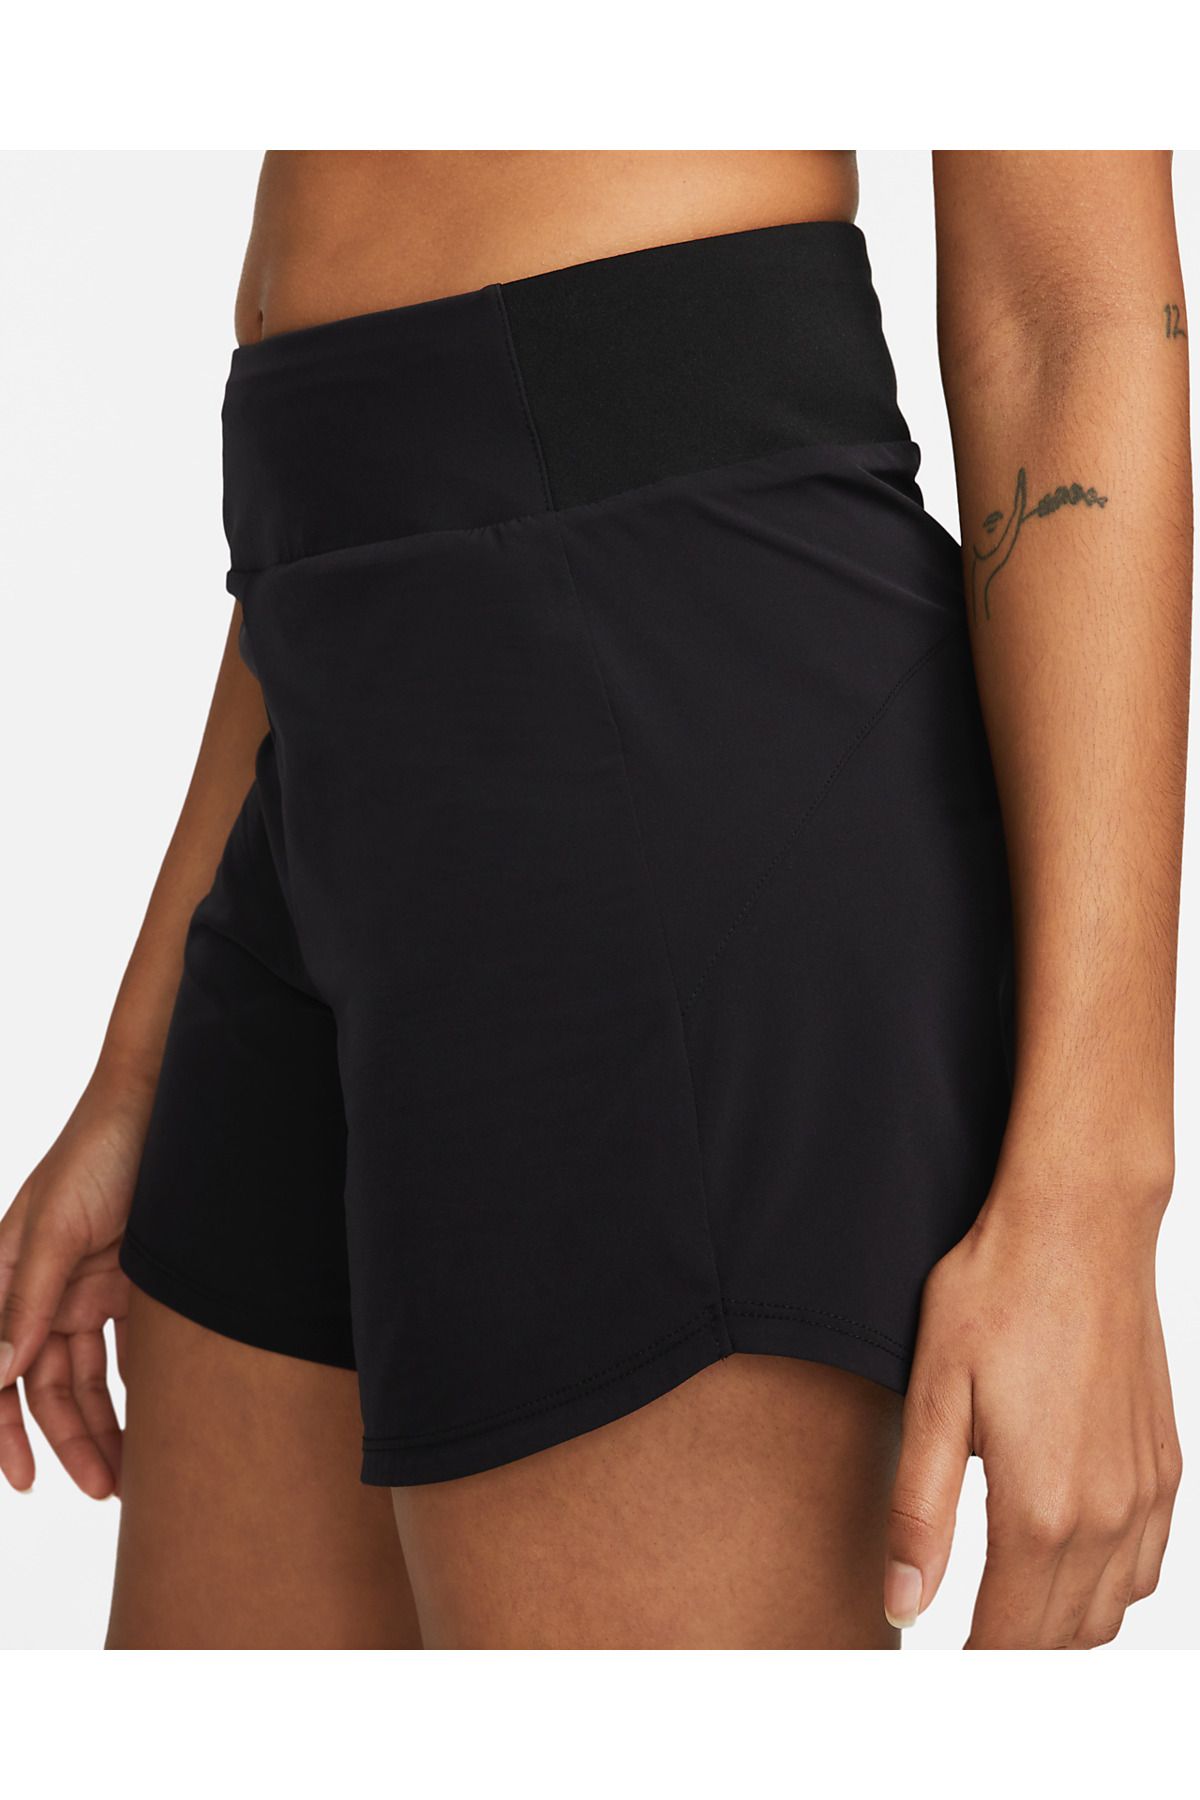 Nike Bliss Dri-FIT Normal Belli 13 cm Slip Astarlı Siyah Kadın Şortu